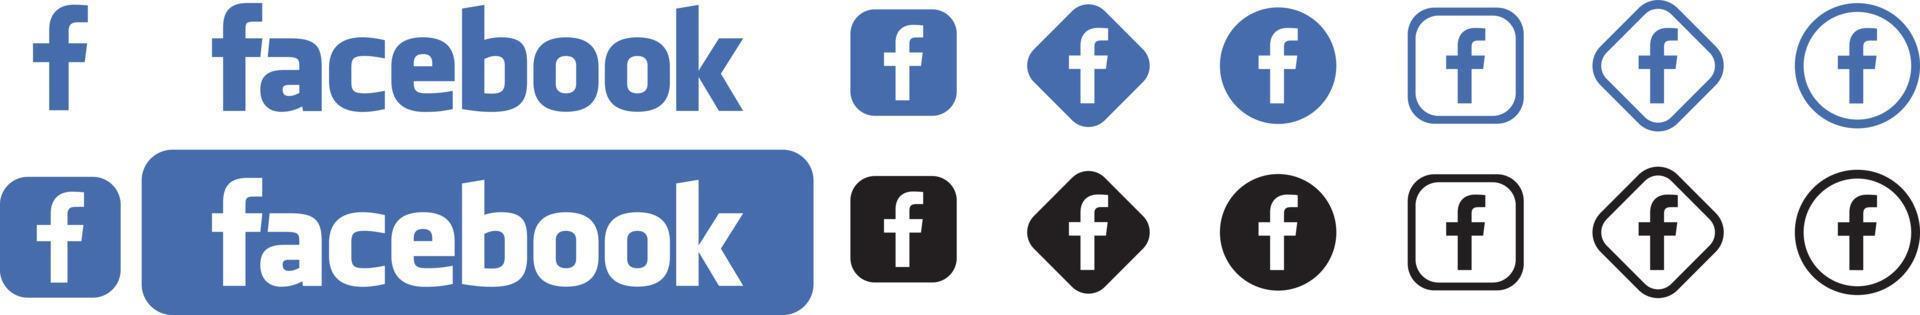 Facebook-Logo auf weißem Hintergrund vektor